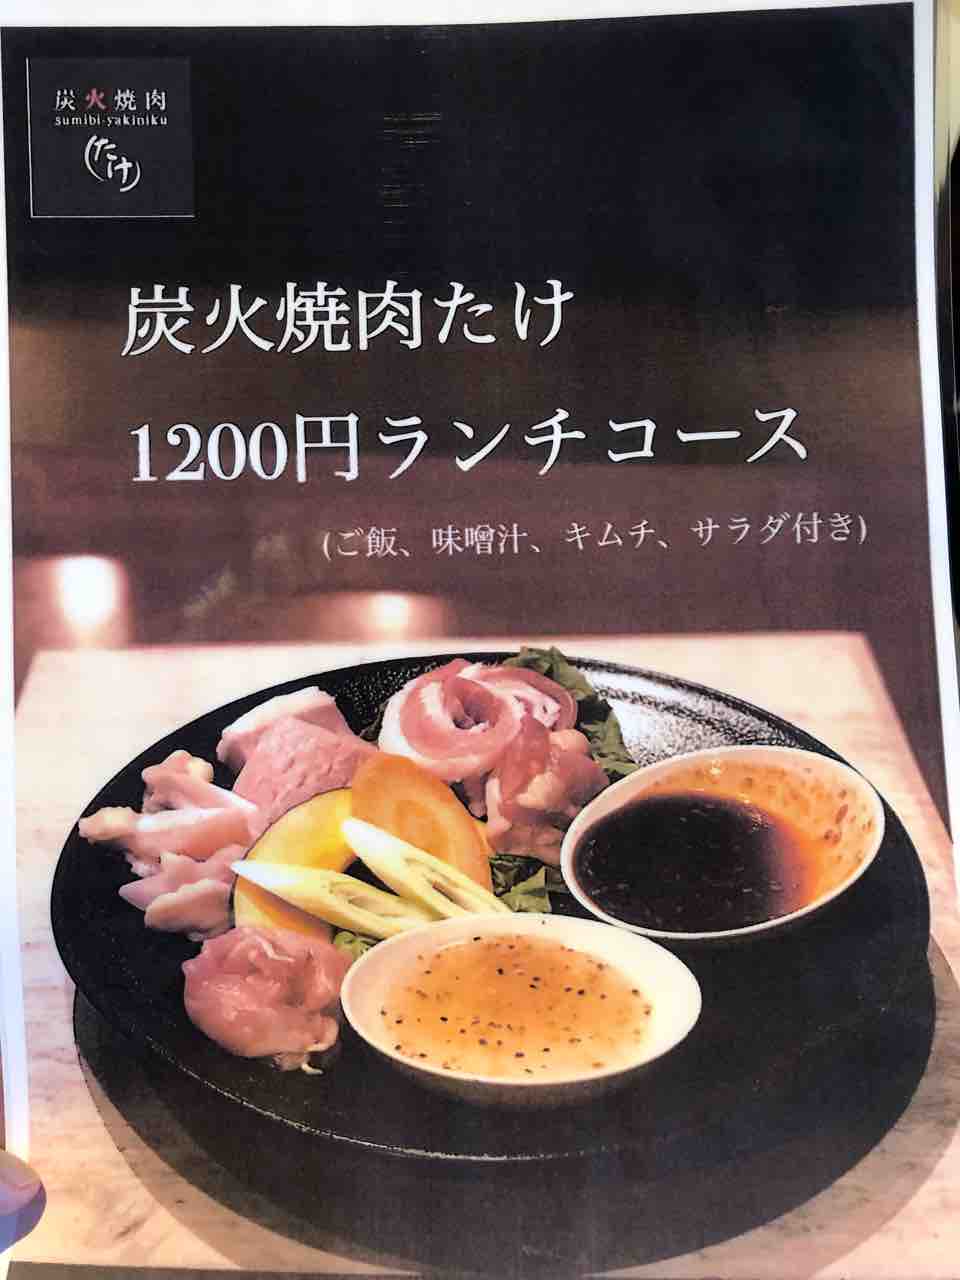 『炭火焼肉たけ 江南店』1,200円ランチコースメニュー